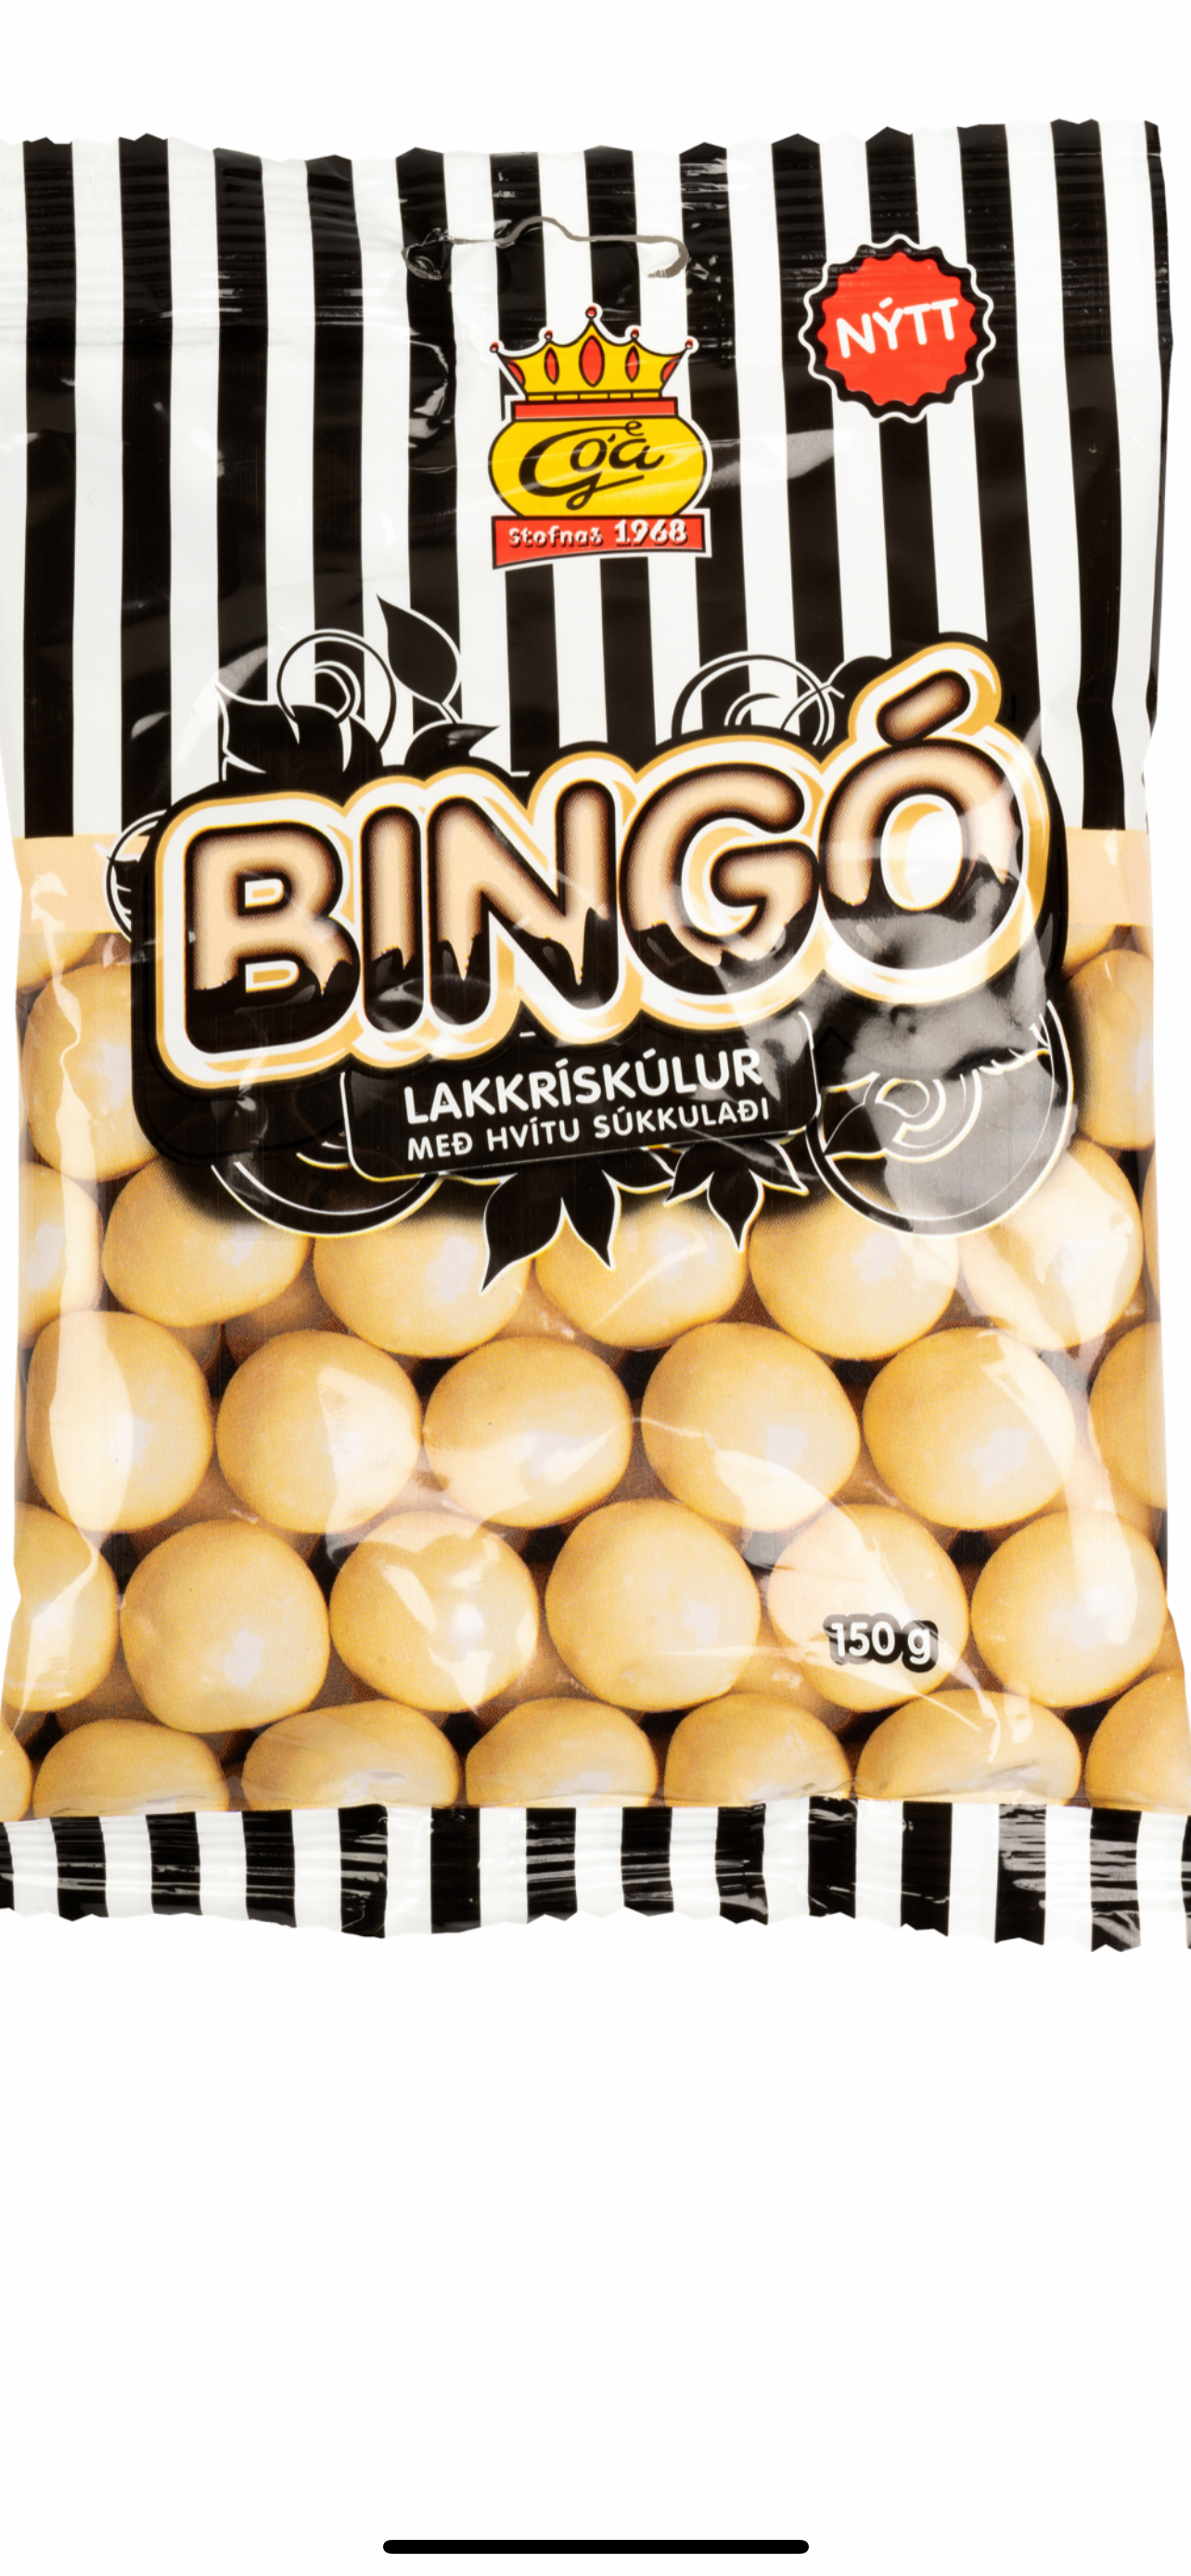 White chocolate bingo balls